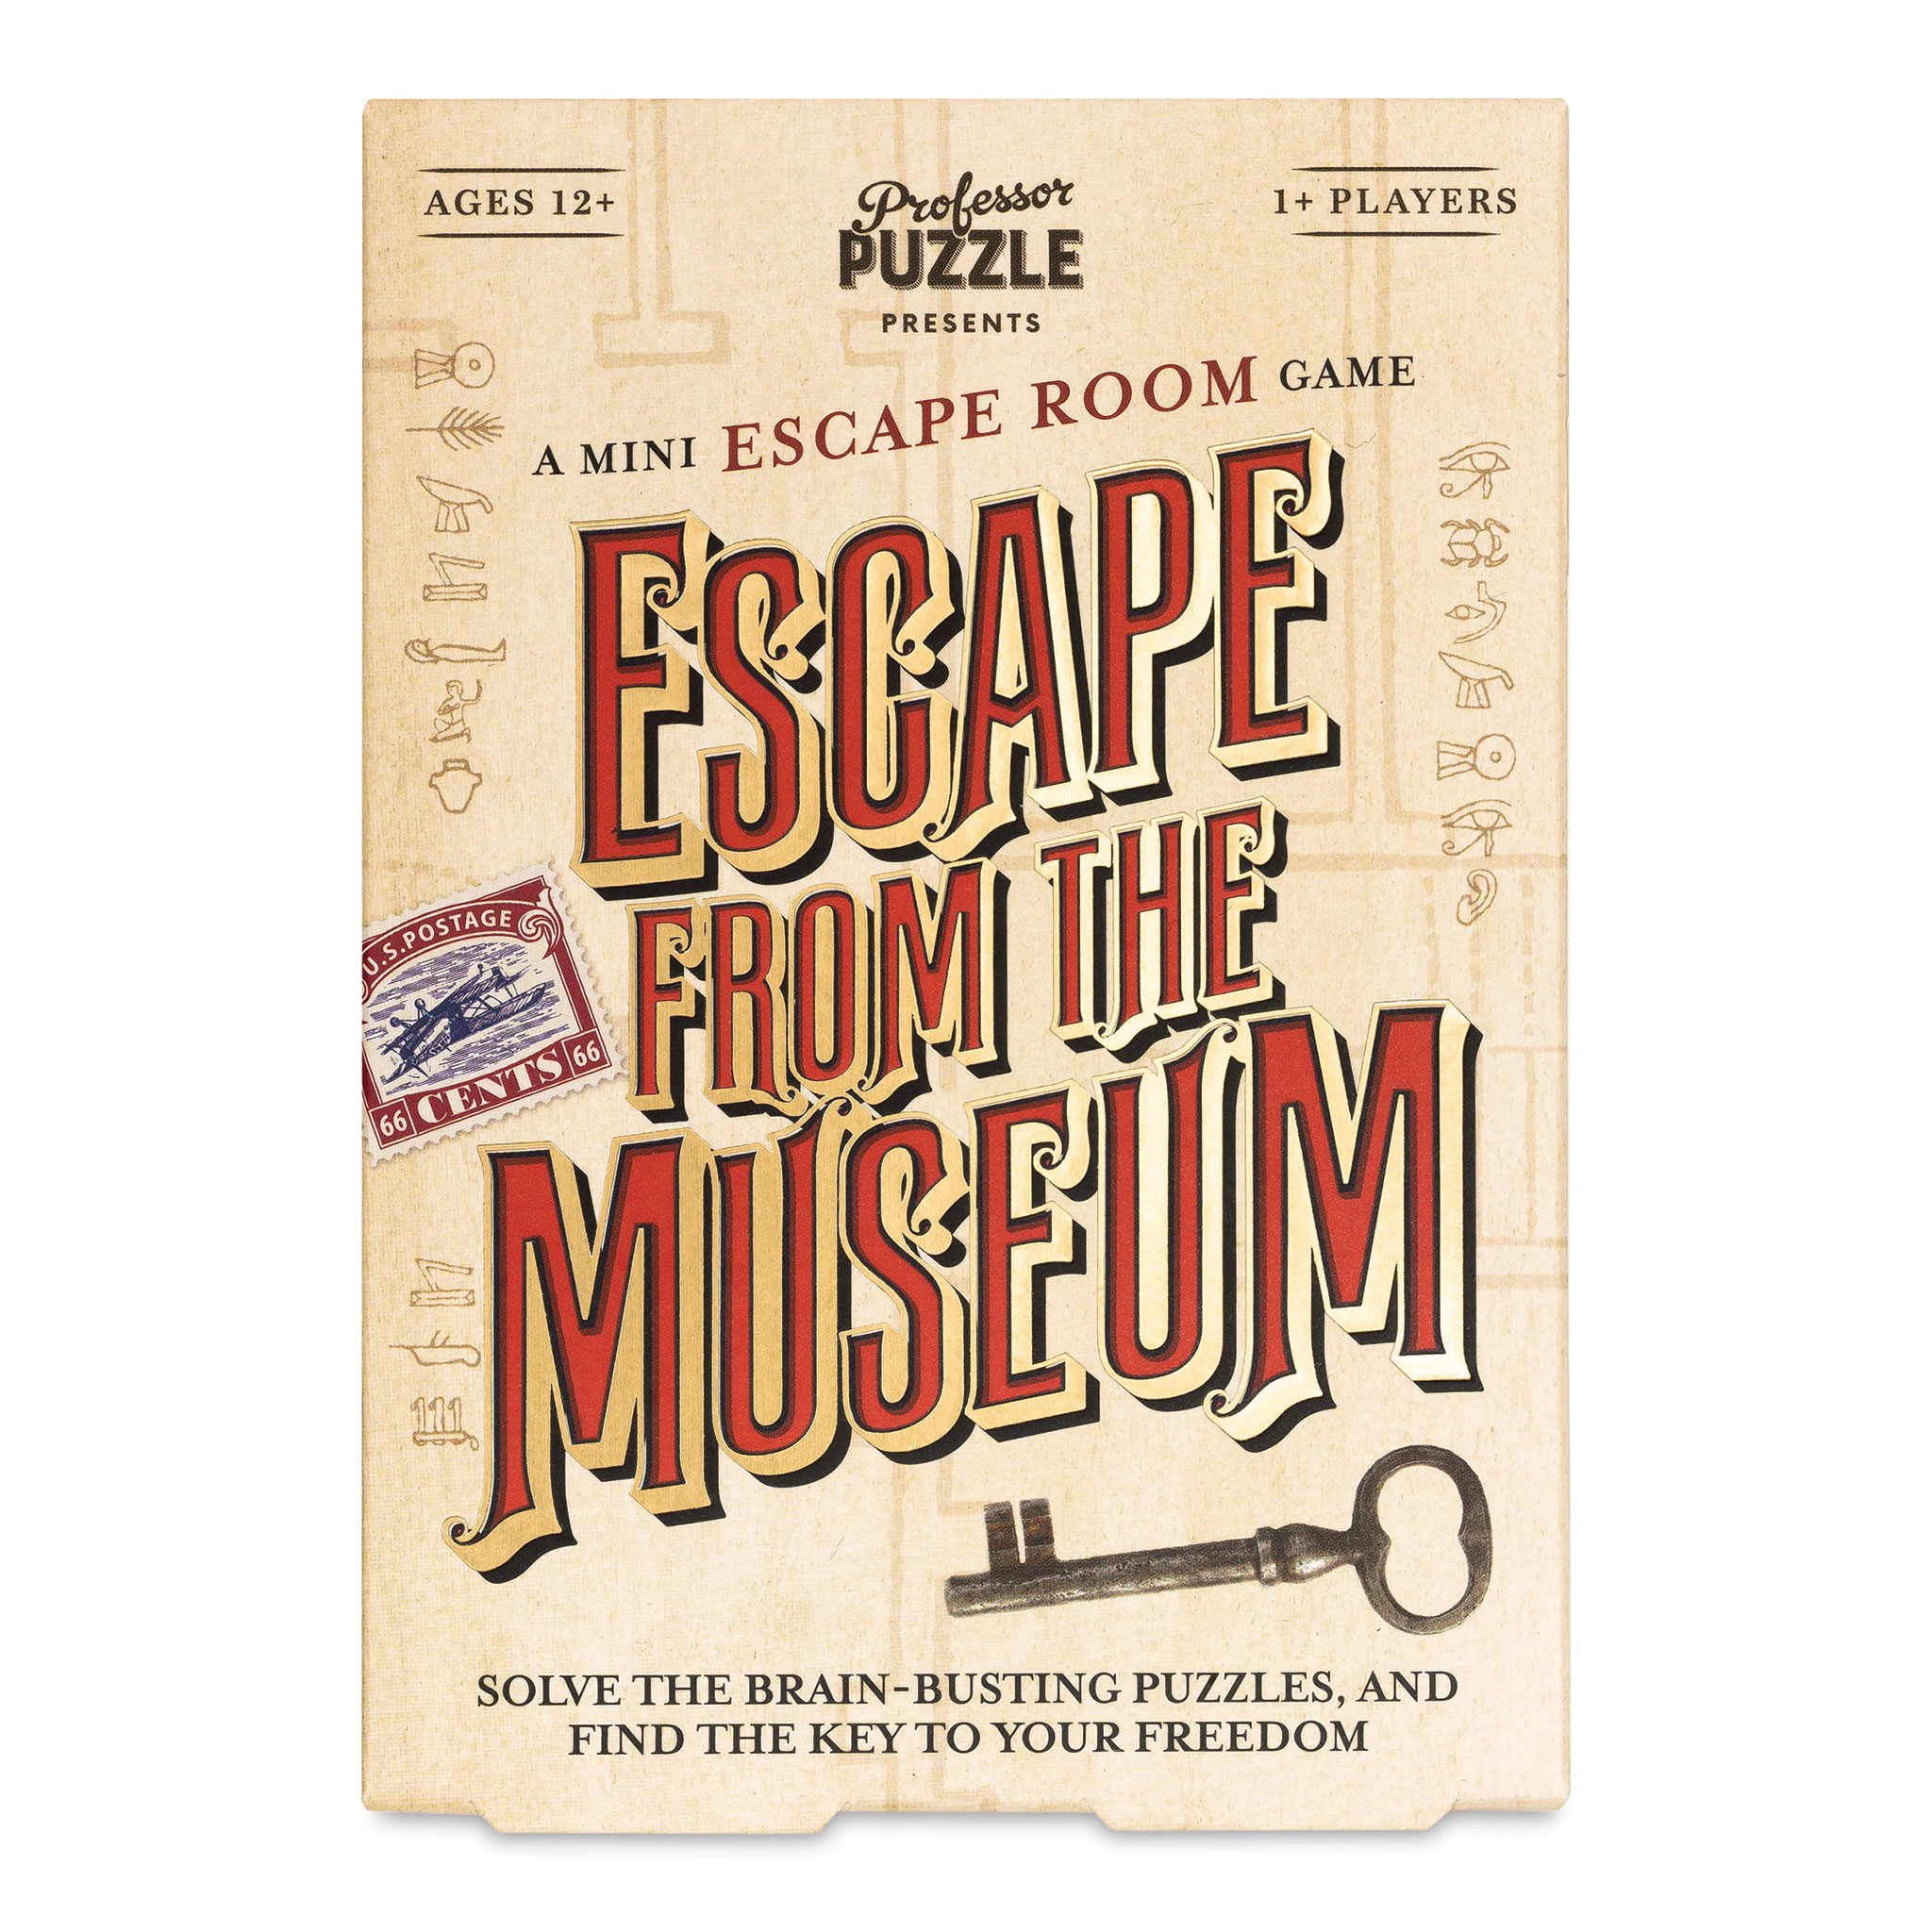 Professor Puzzle Escape from the Museum: A Mini Escape Room Game